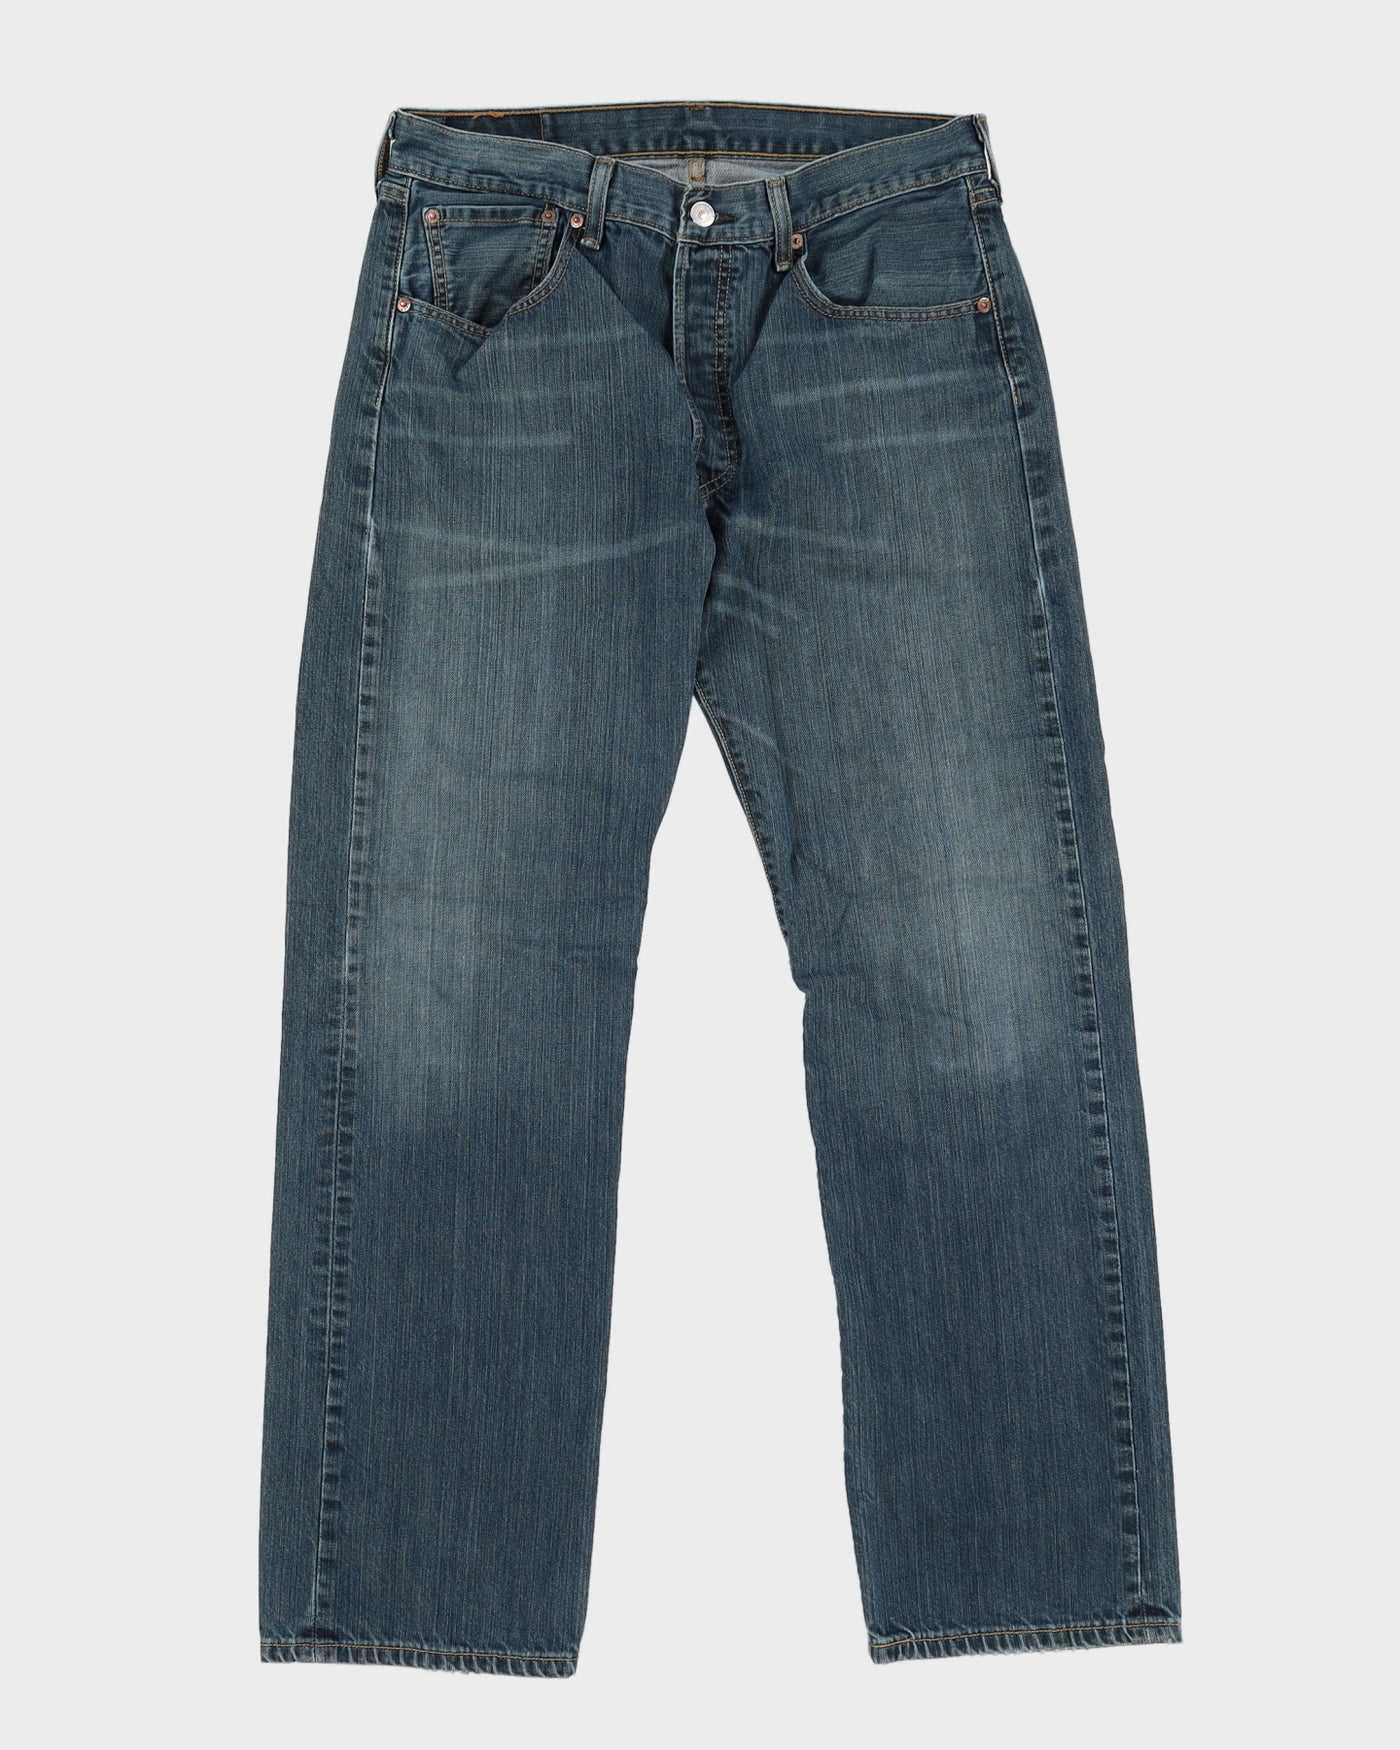 Levi's 501 Dark Blue Jeans - W33 L31